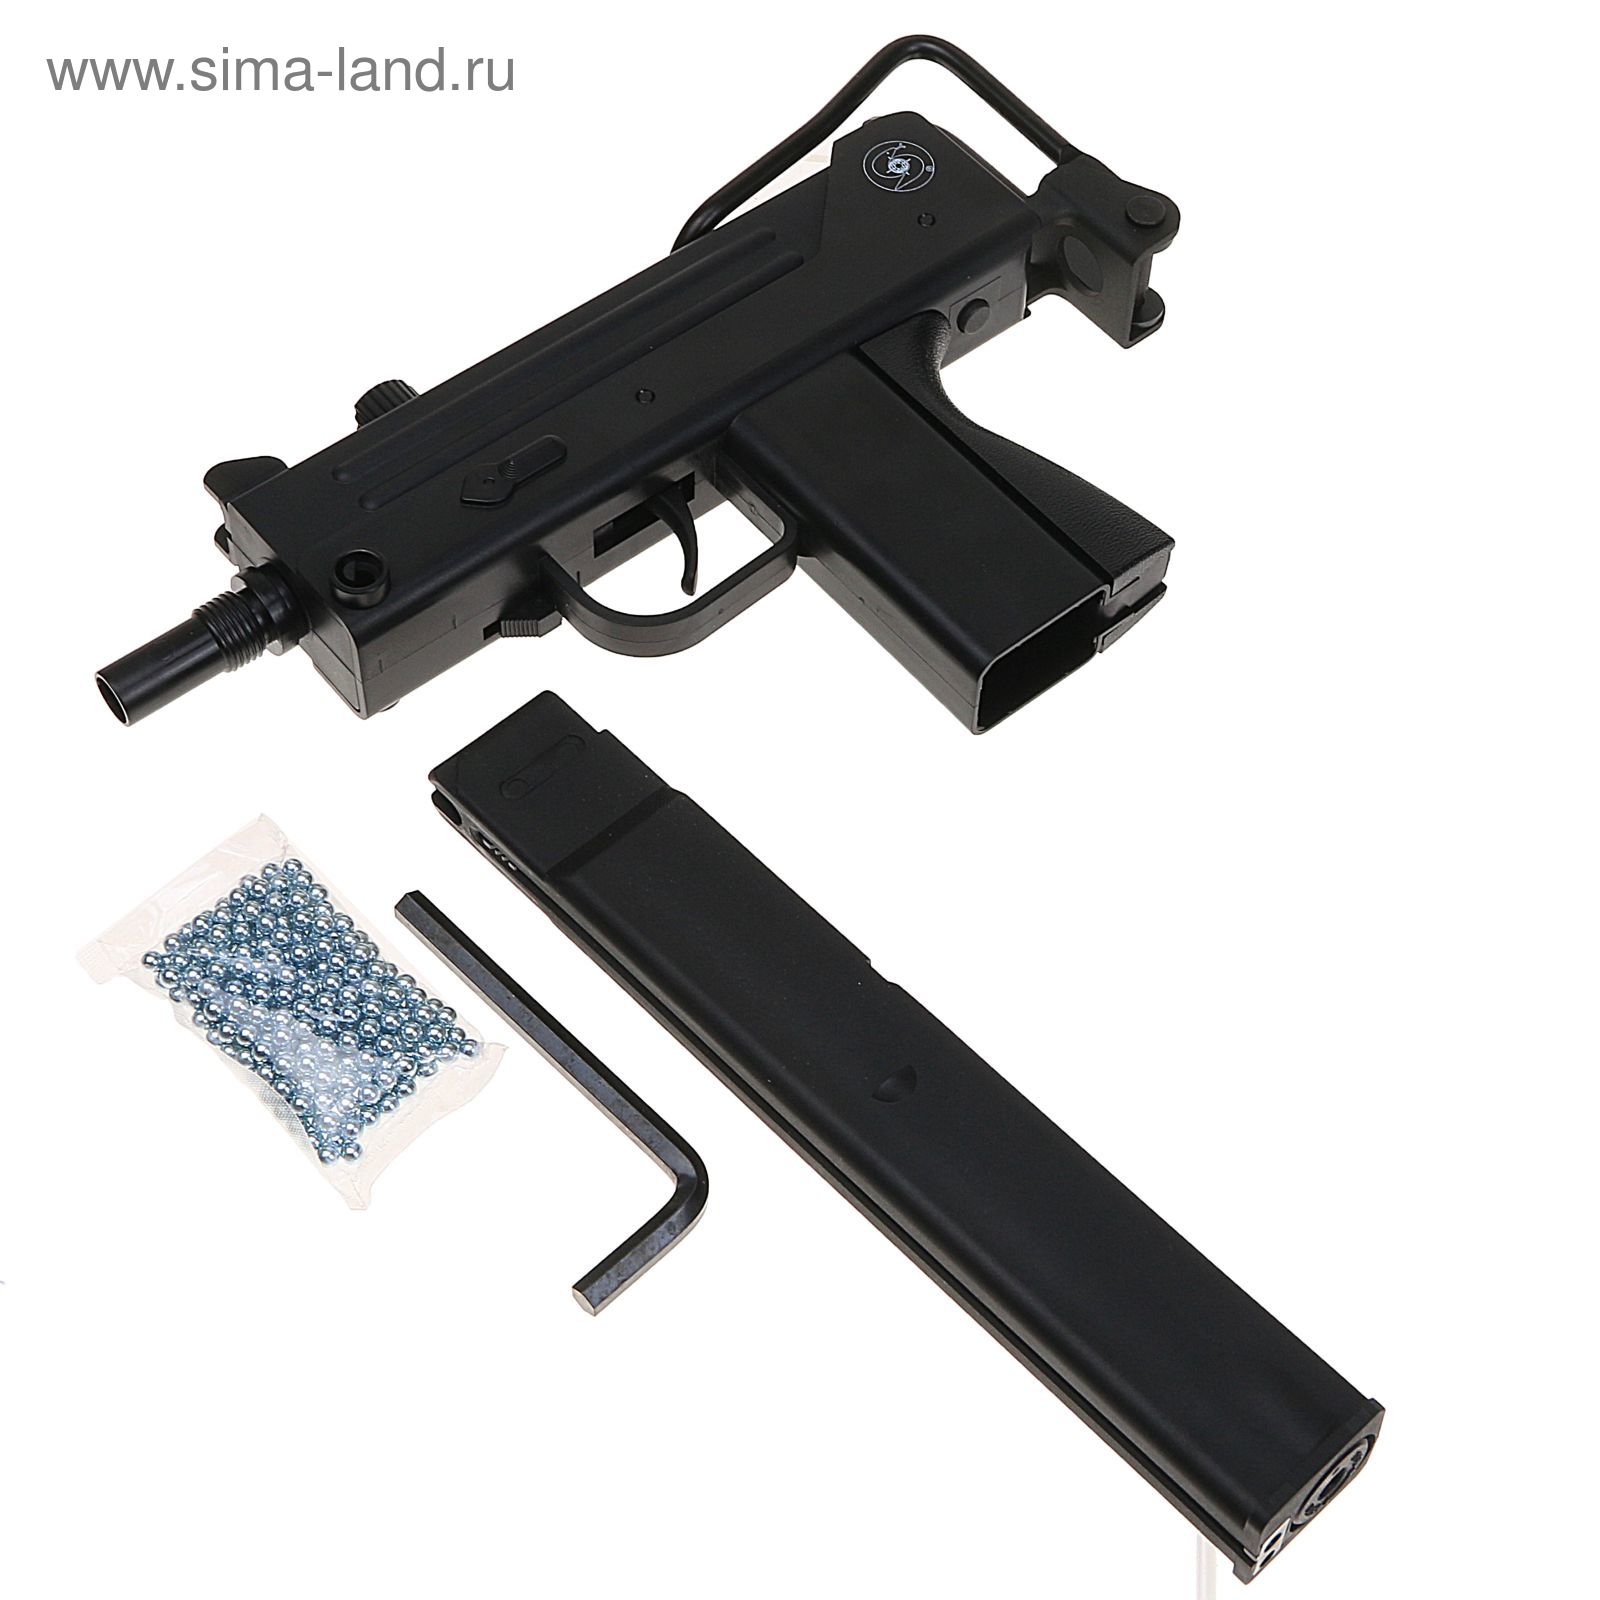 Пистолет-пулемет Ingram M11 GNB пластик/черный/полуавтомат